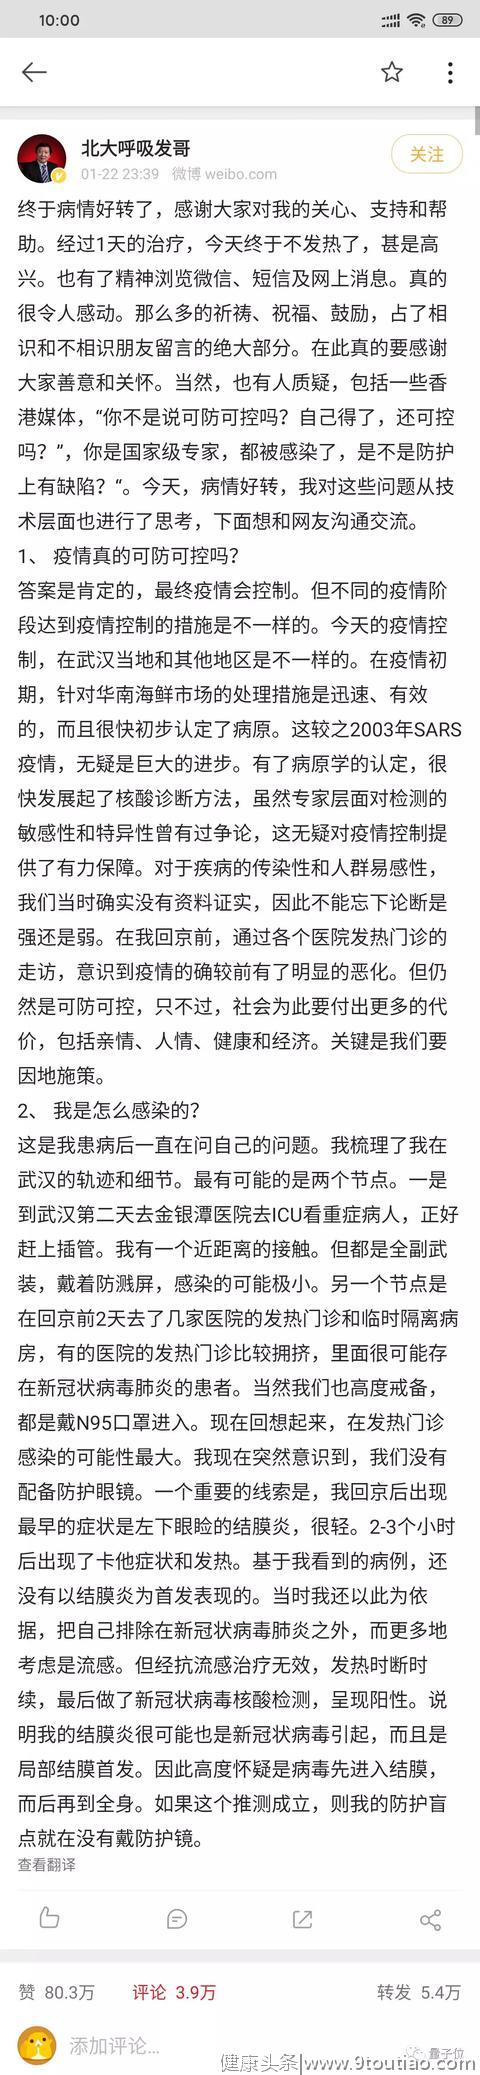 武汉“封城”抗击新型肺炎，北大最新病毒宿主研究指向蛇